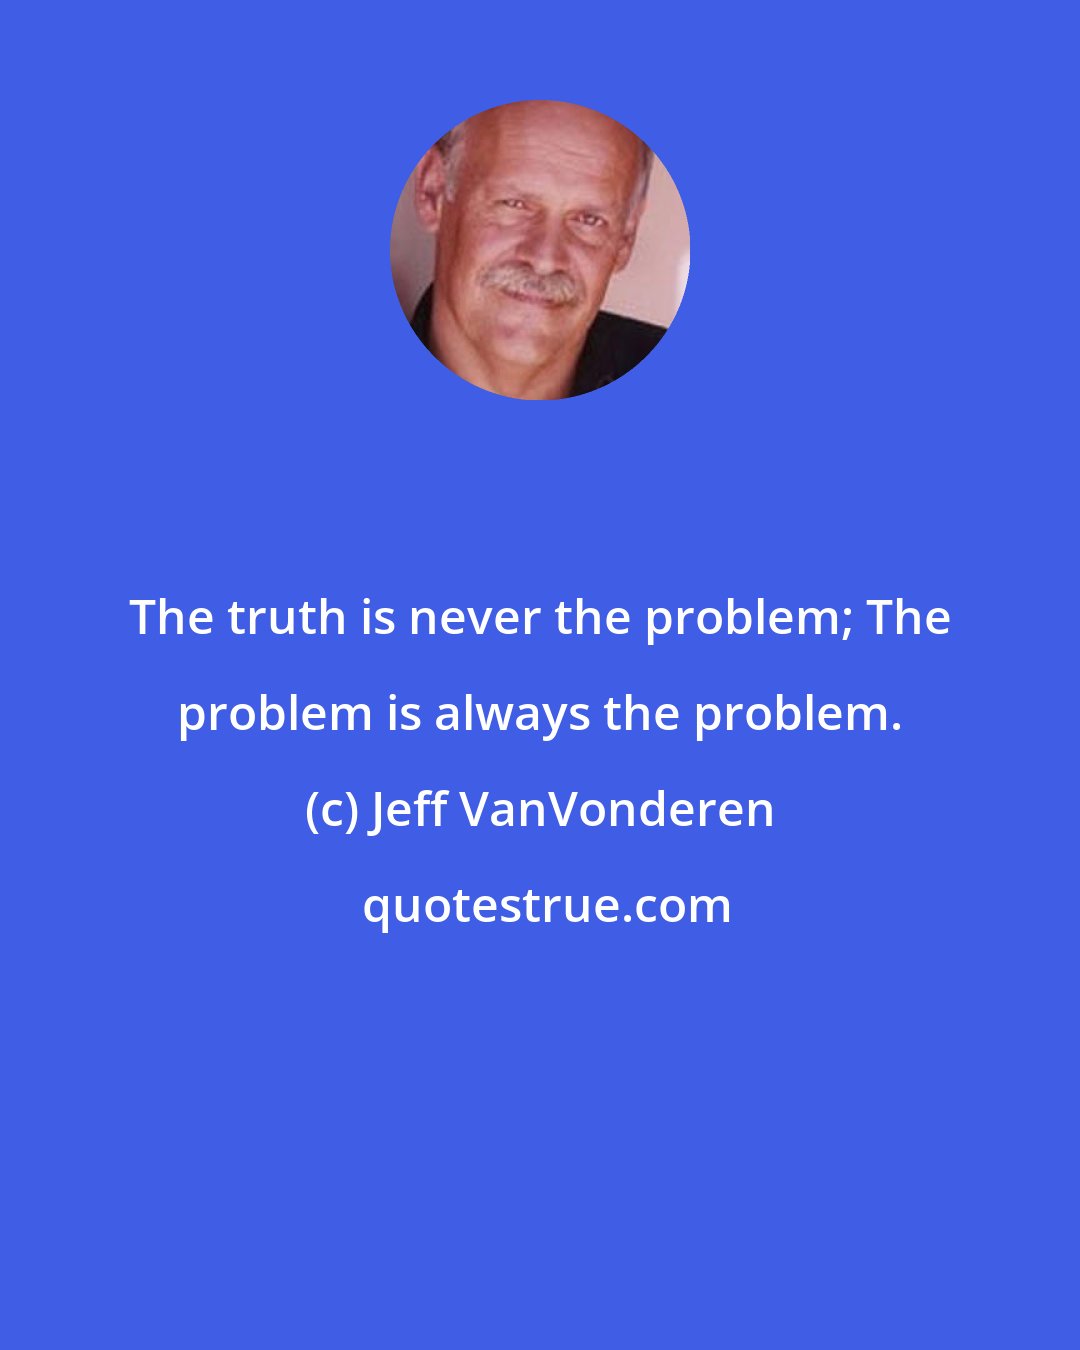 Jeff VanVonderen: The truth is never the problem; The problem is always the problem.